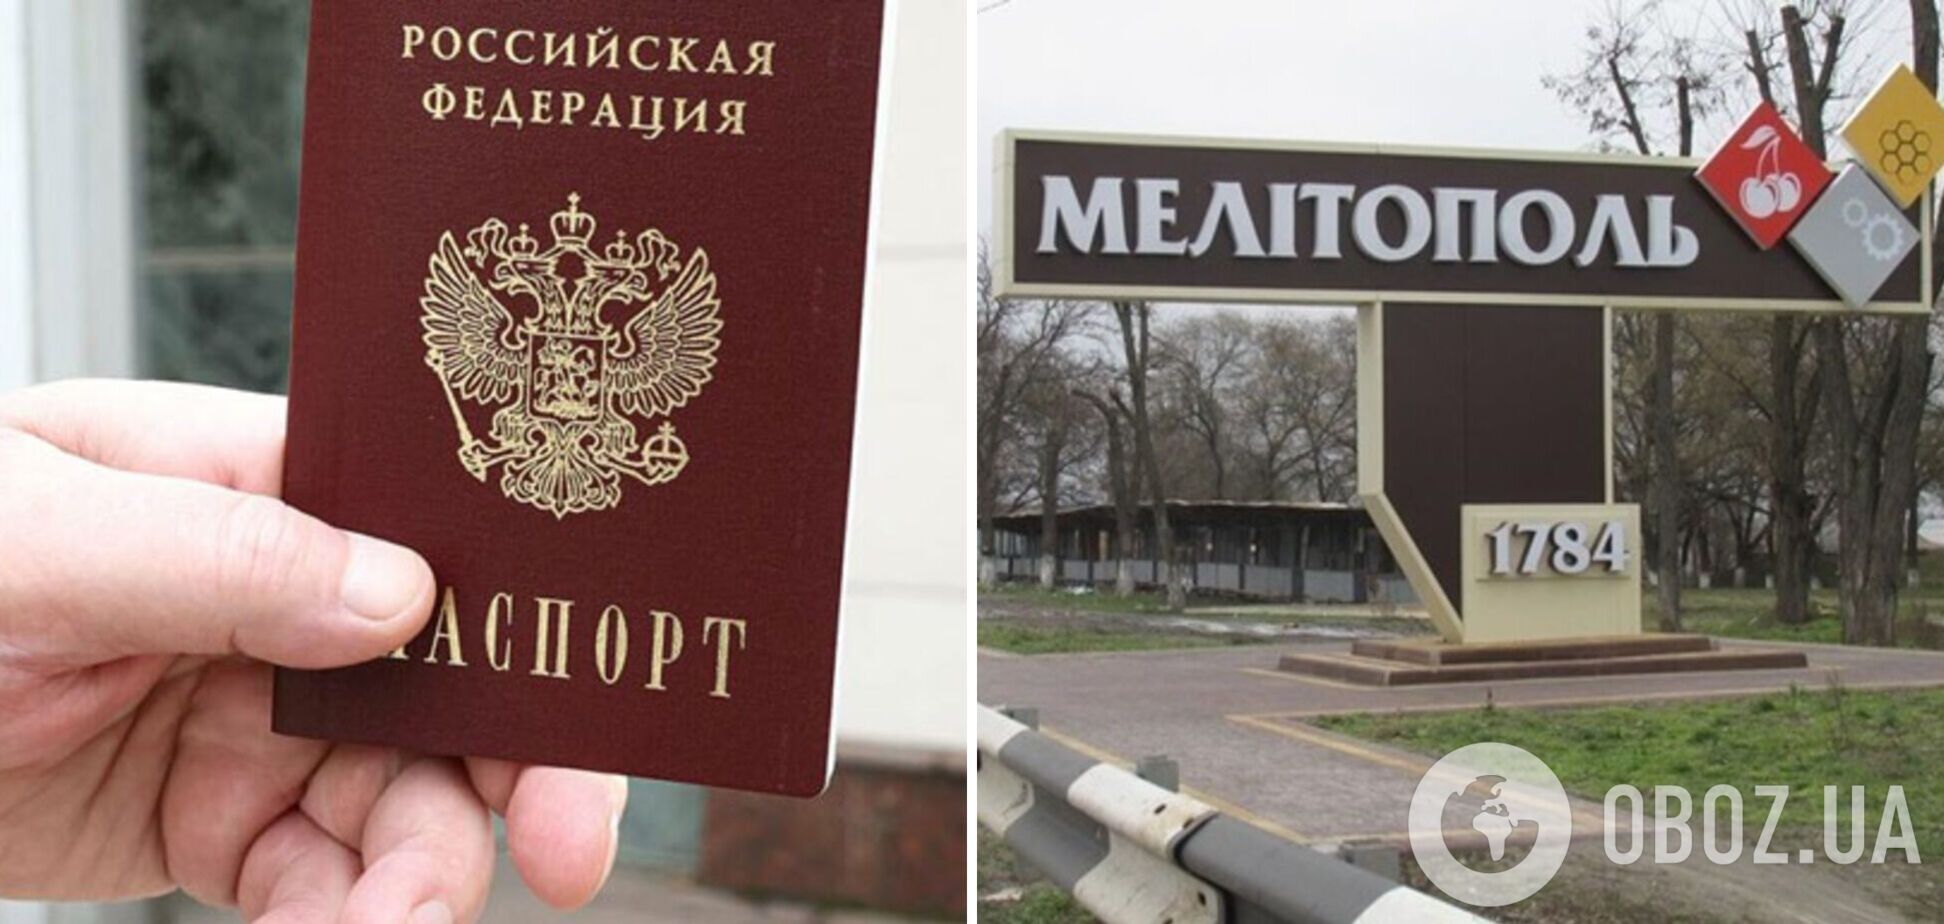 В Мелитополе врач отказался госпитализировать ребенка без гражданства РФ – СМИ